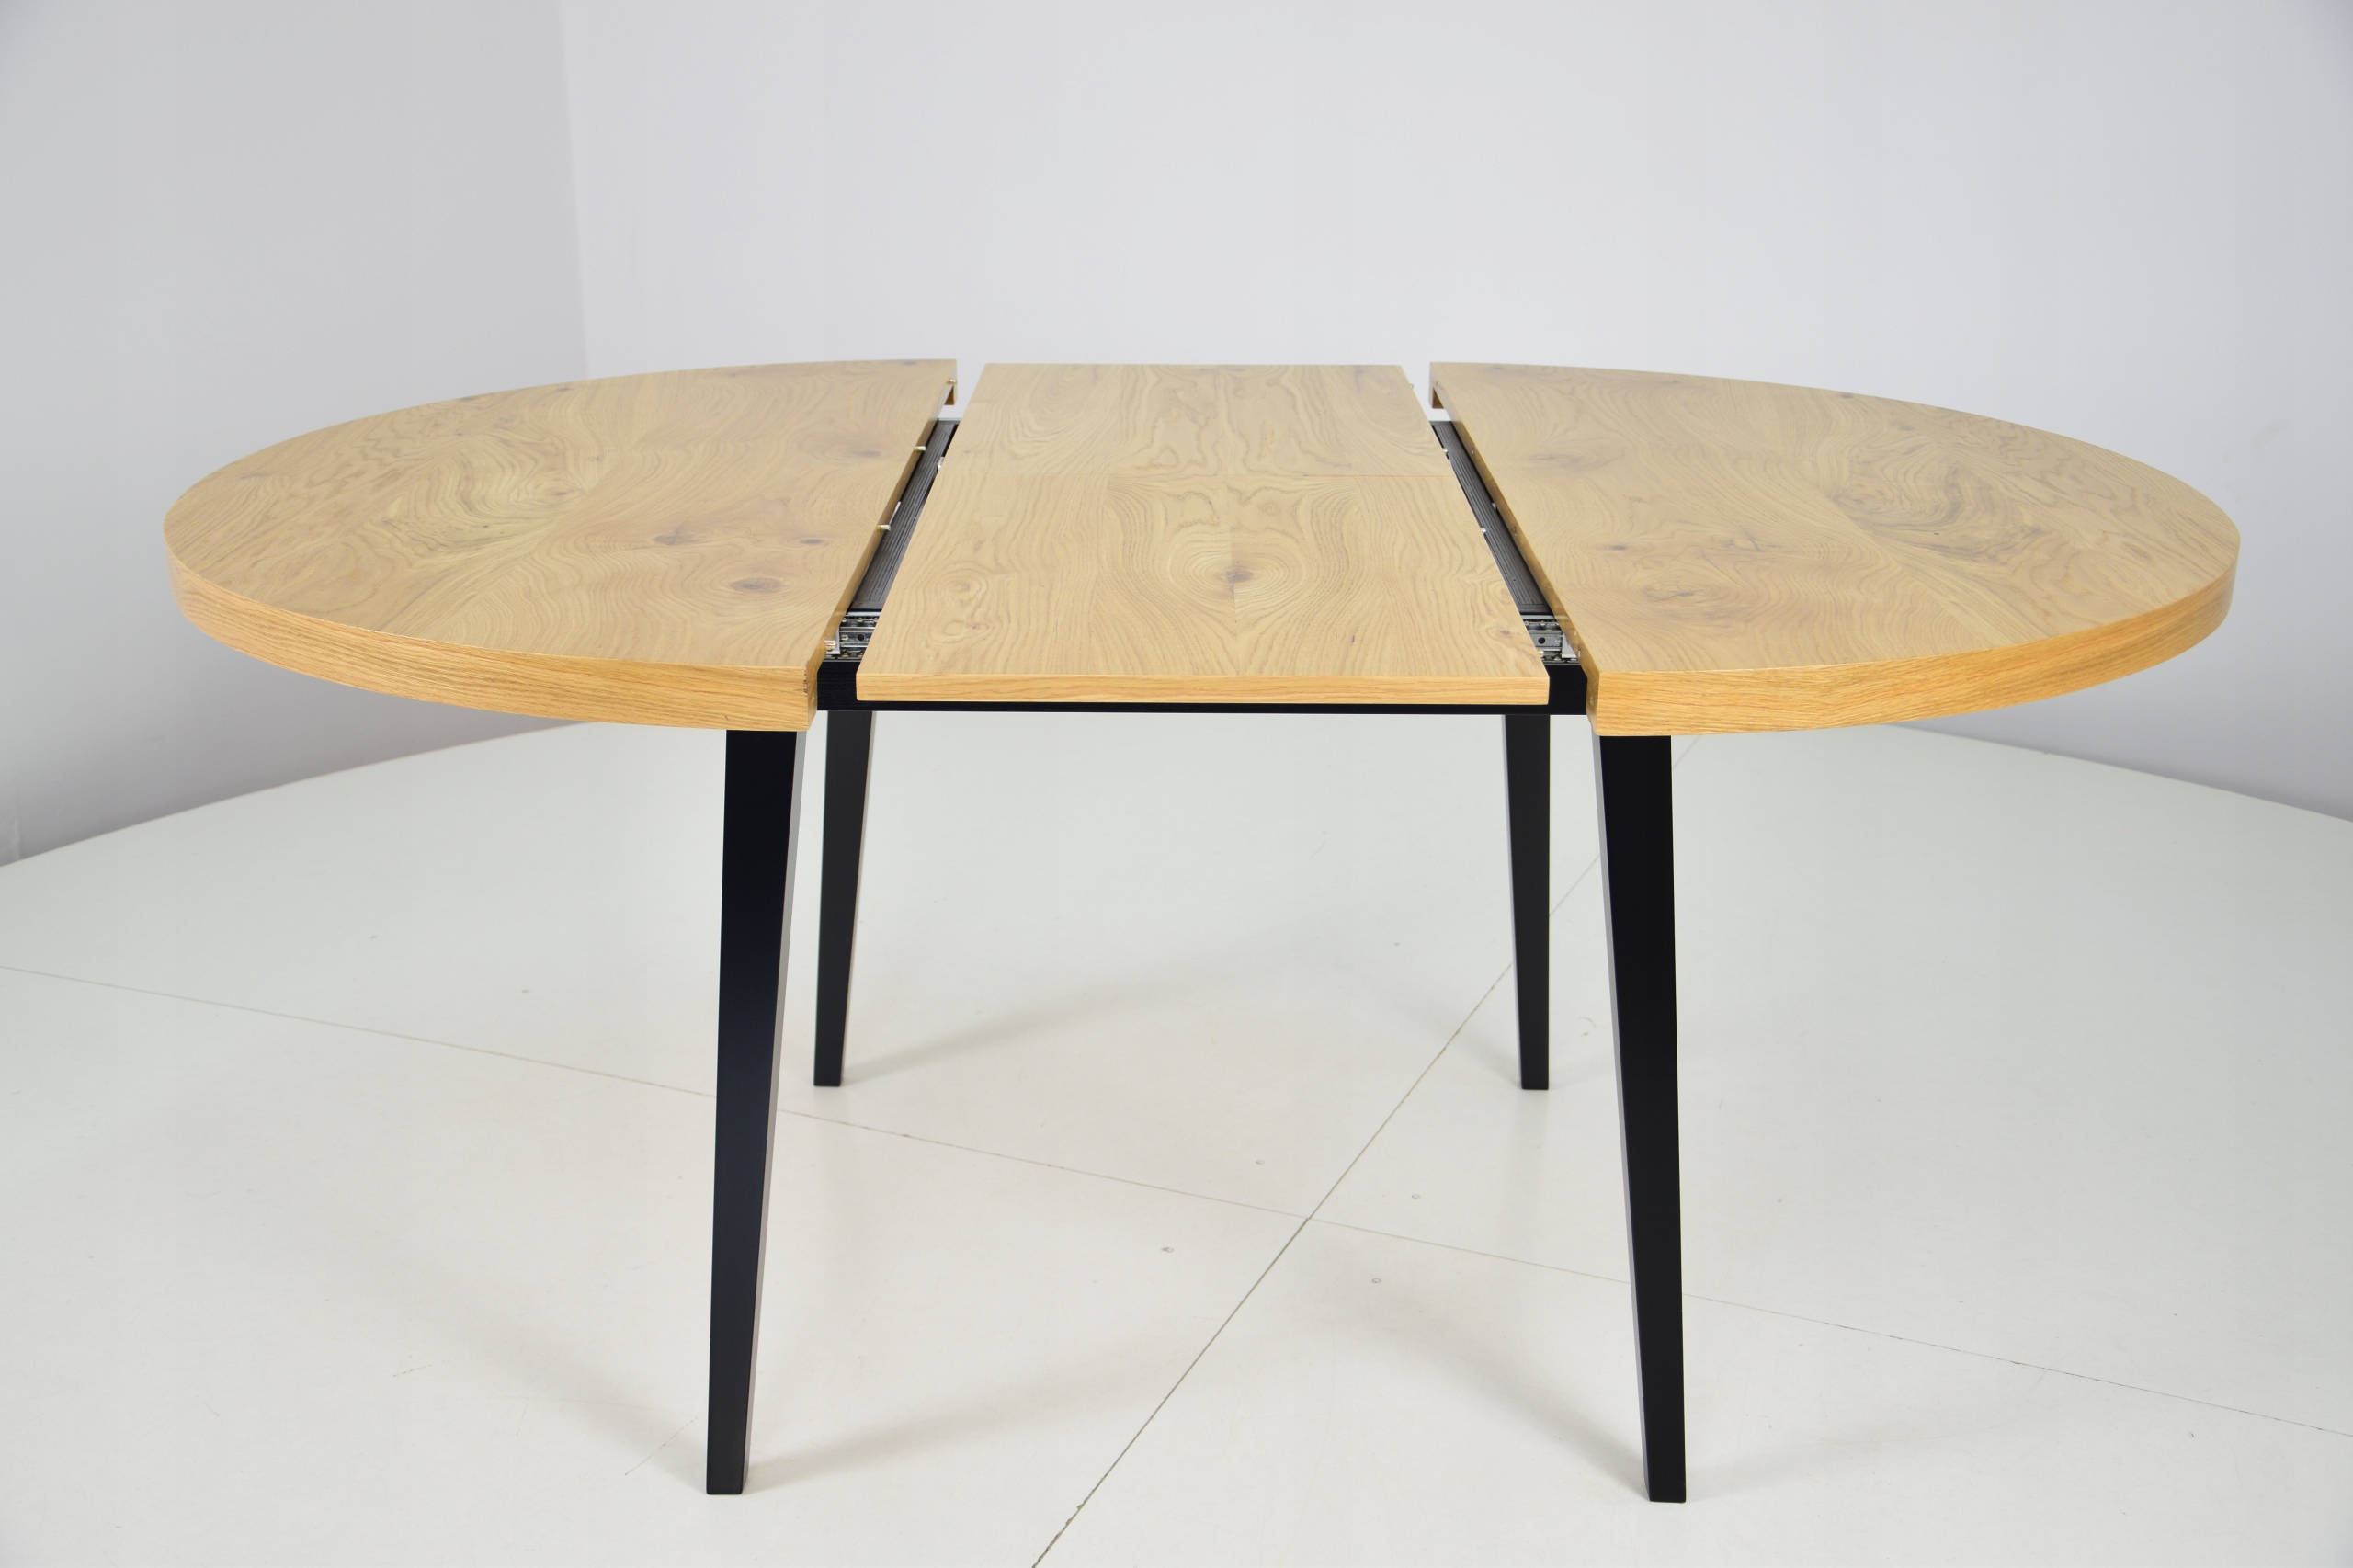 стол кухонный круглый 120 см